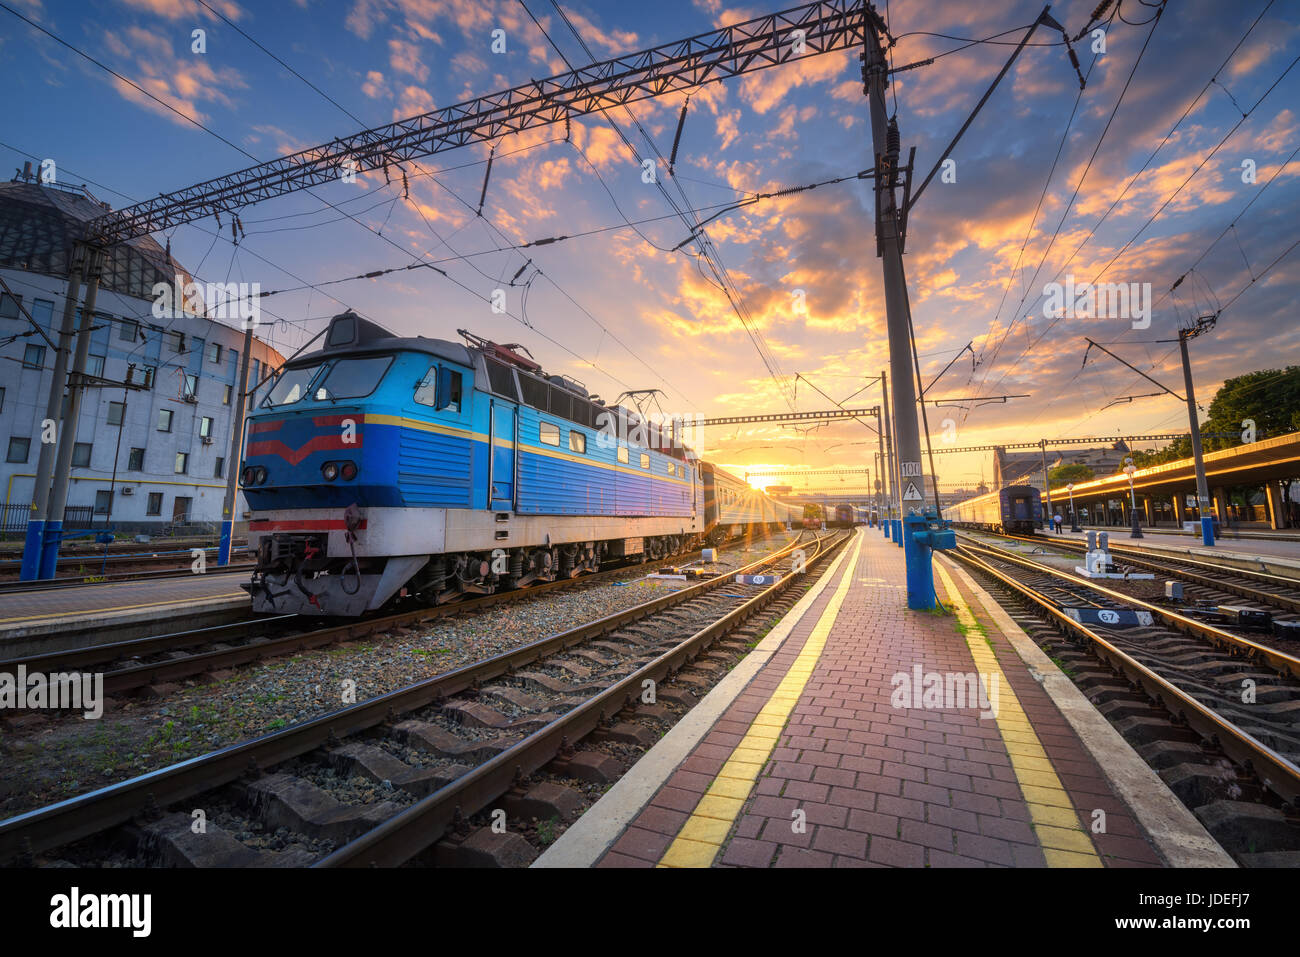 Treno Blu presso la stazione ferroviaria al tramonto. Incredibile paesaggio industriale con la vecchia locomotiva, edifici, rotaie e colorato tramonto Cielo con nuvole. T Foto Stock